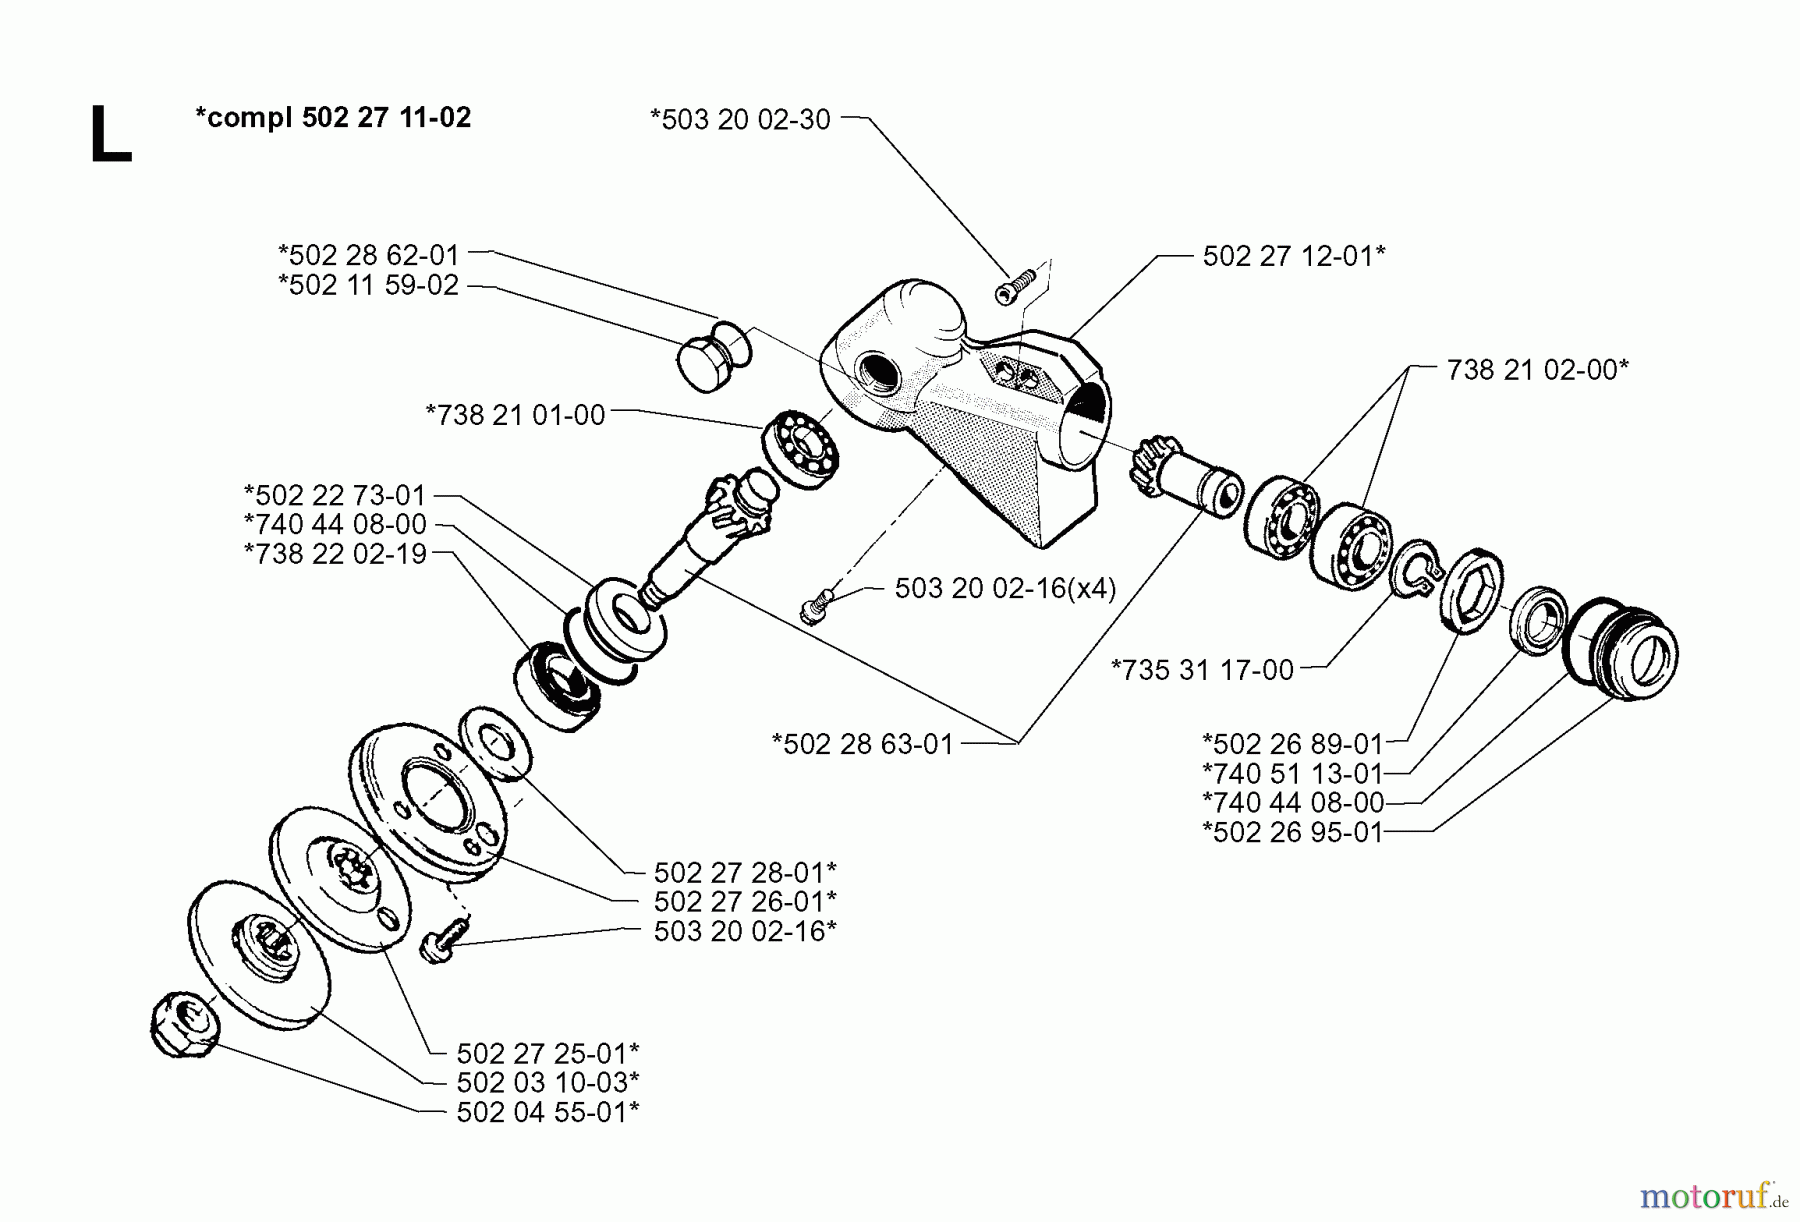  Jonsered Motorsensen, Trimmer RS51 - Jonsered String/Brush Trimmer (1998-03) BEVEL GEAR